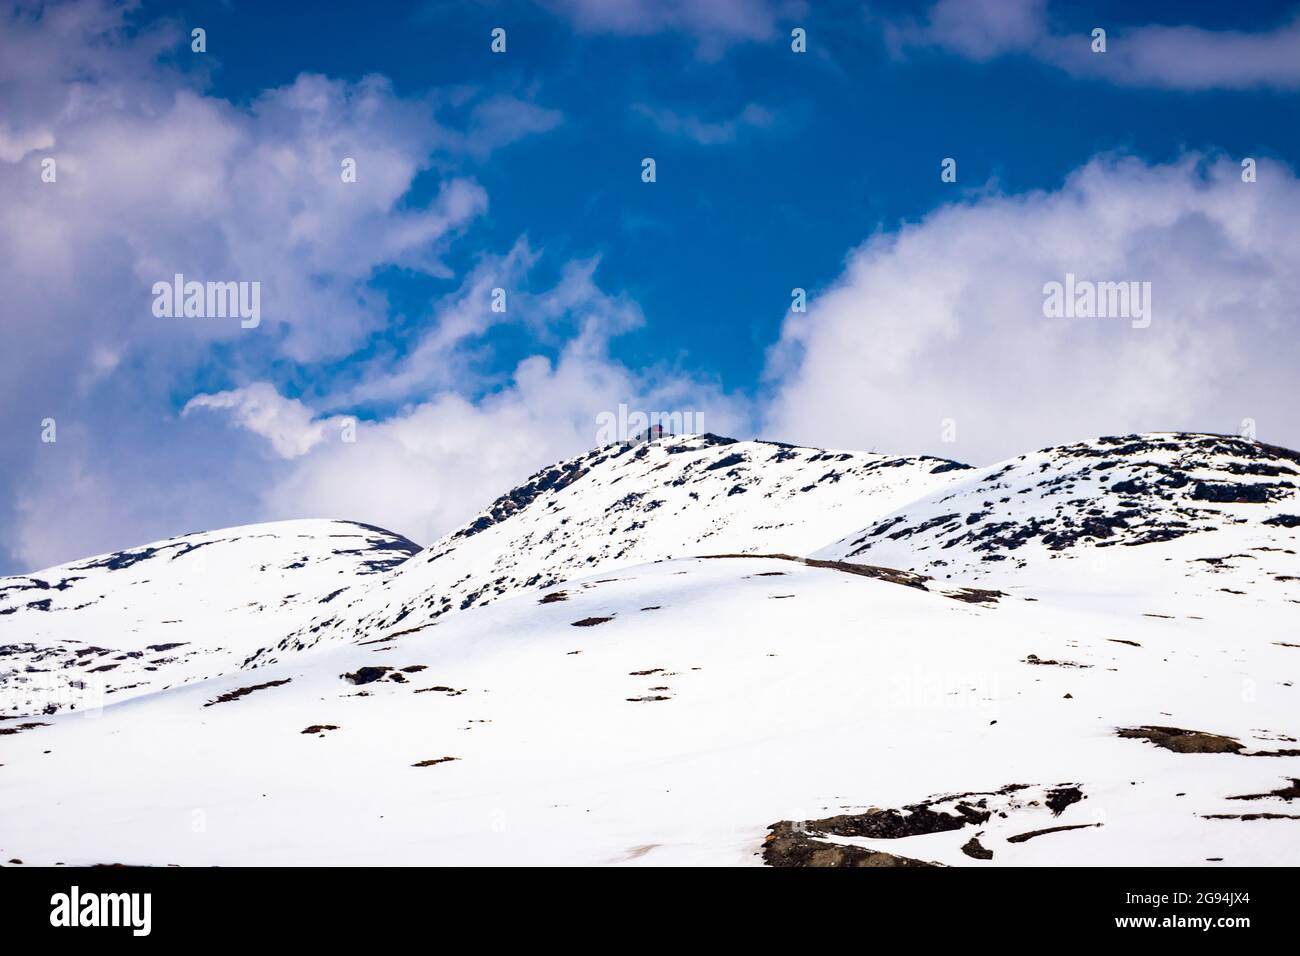 Schneekappe Berge mit hellblauem Himmel am Tag aus flachem Winkel Bild wird am Bumla-Pass arunachal pradesh india aufgenommen. Stockfoto